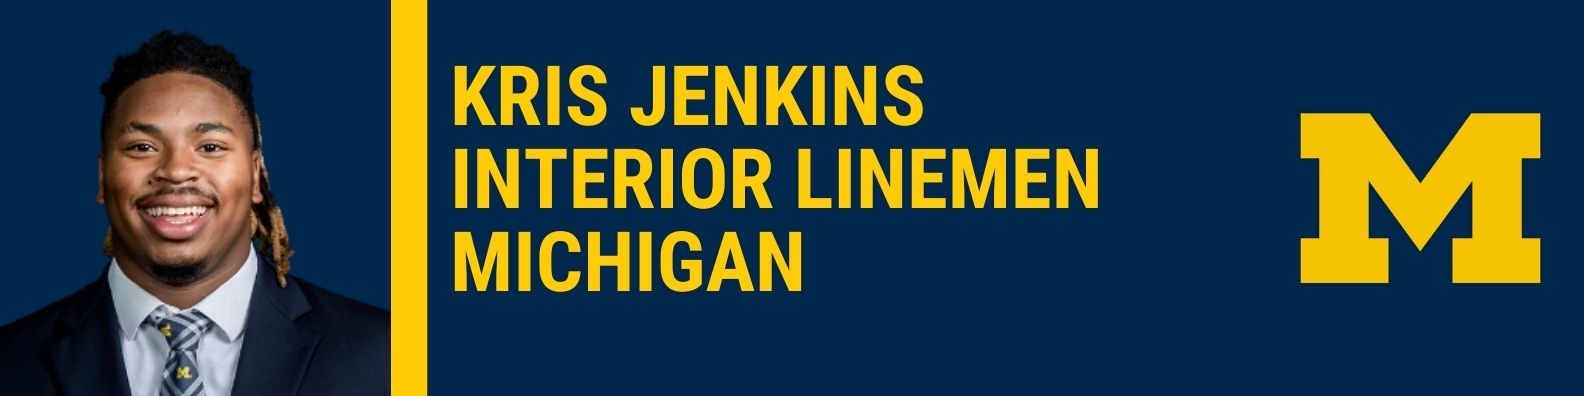 Kris Jenkins, Michigan